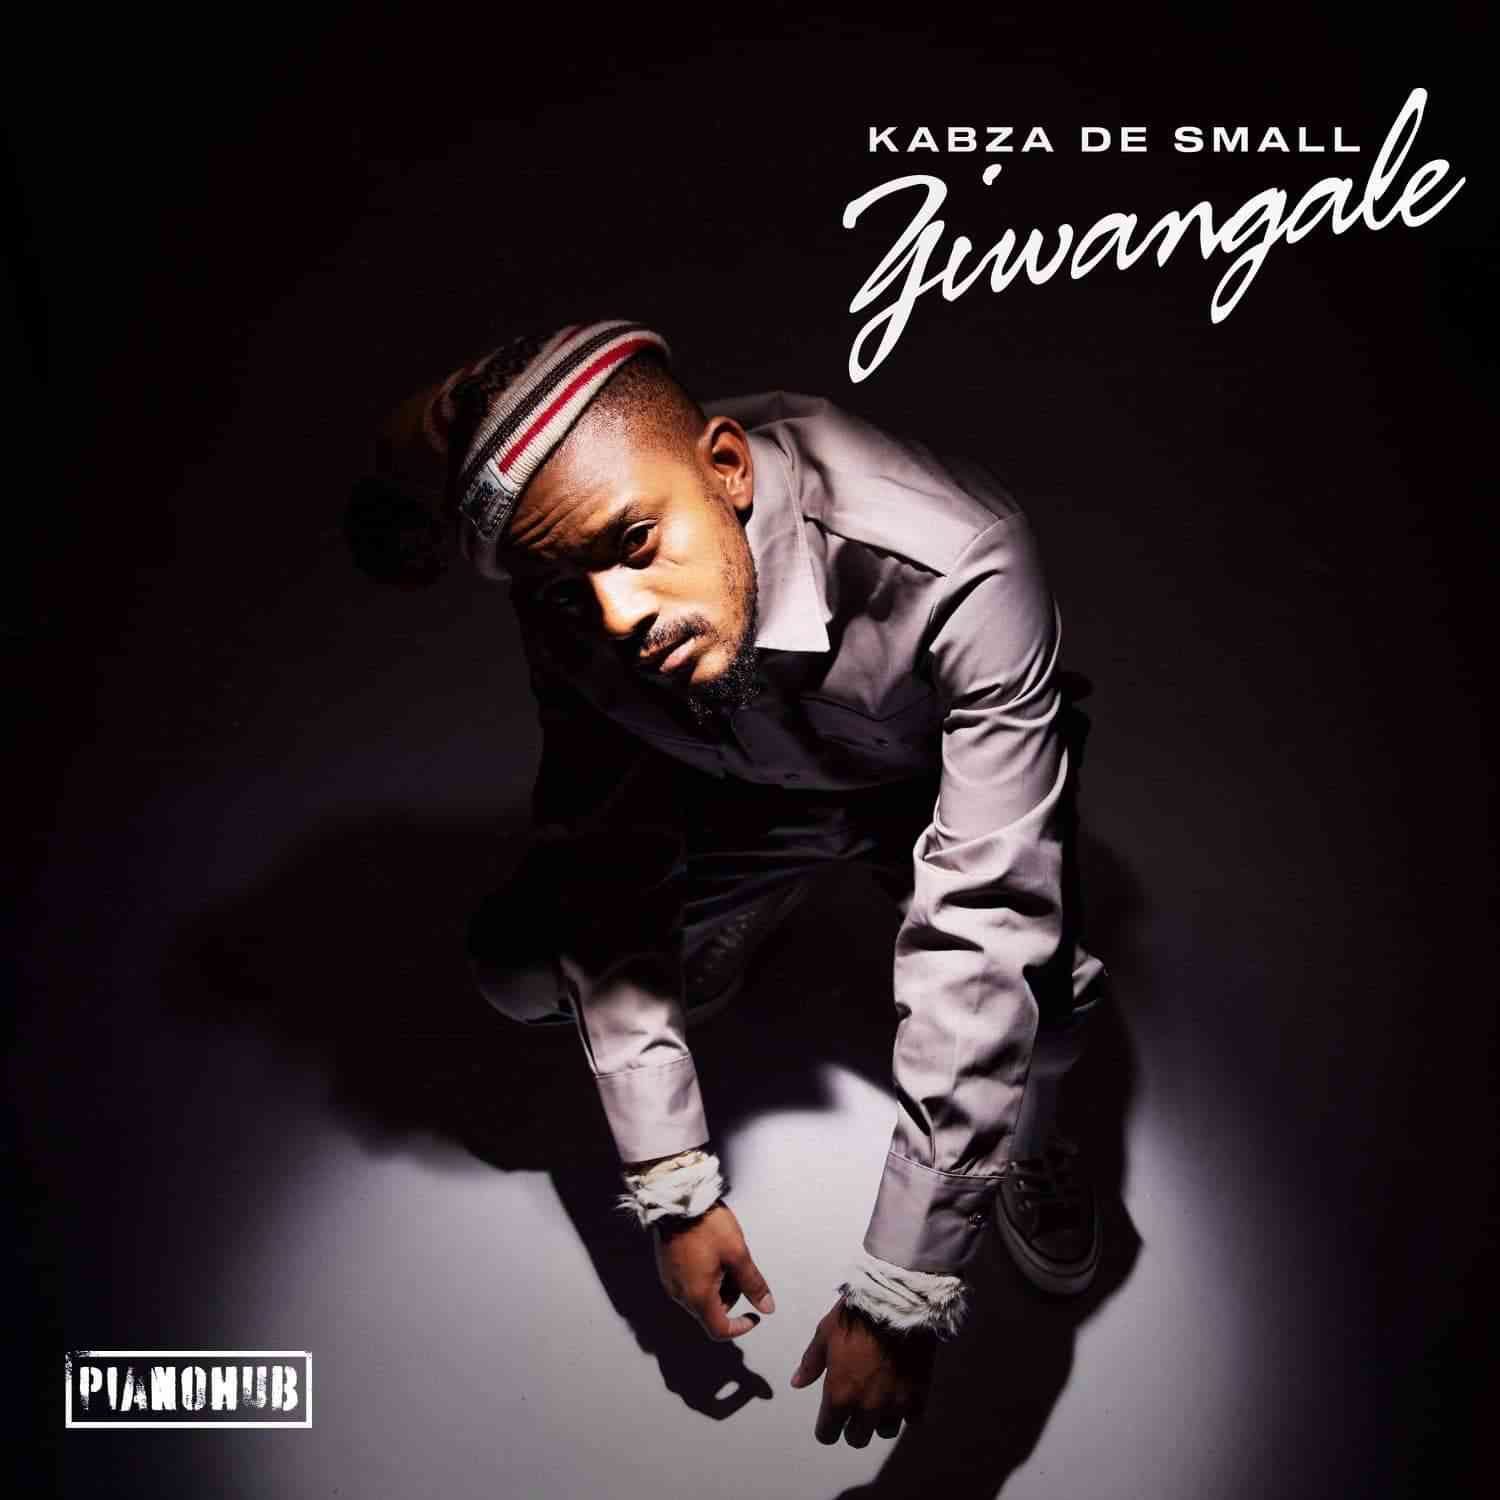 Kabza De Small Drops Ziwangale EP